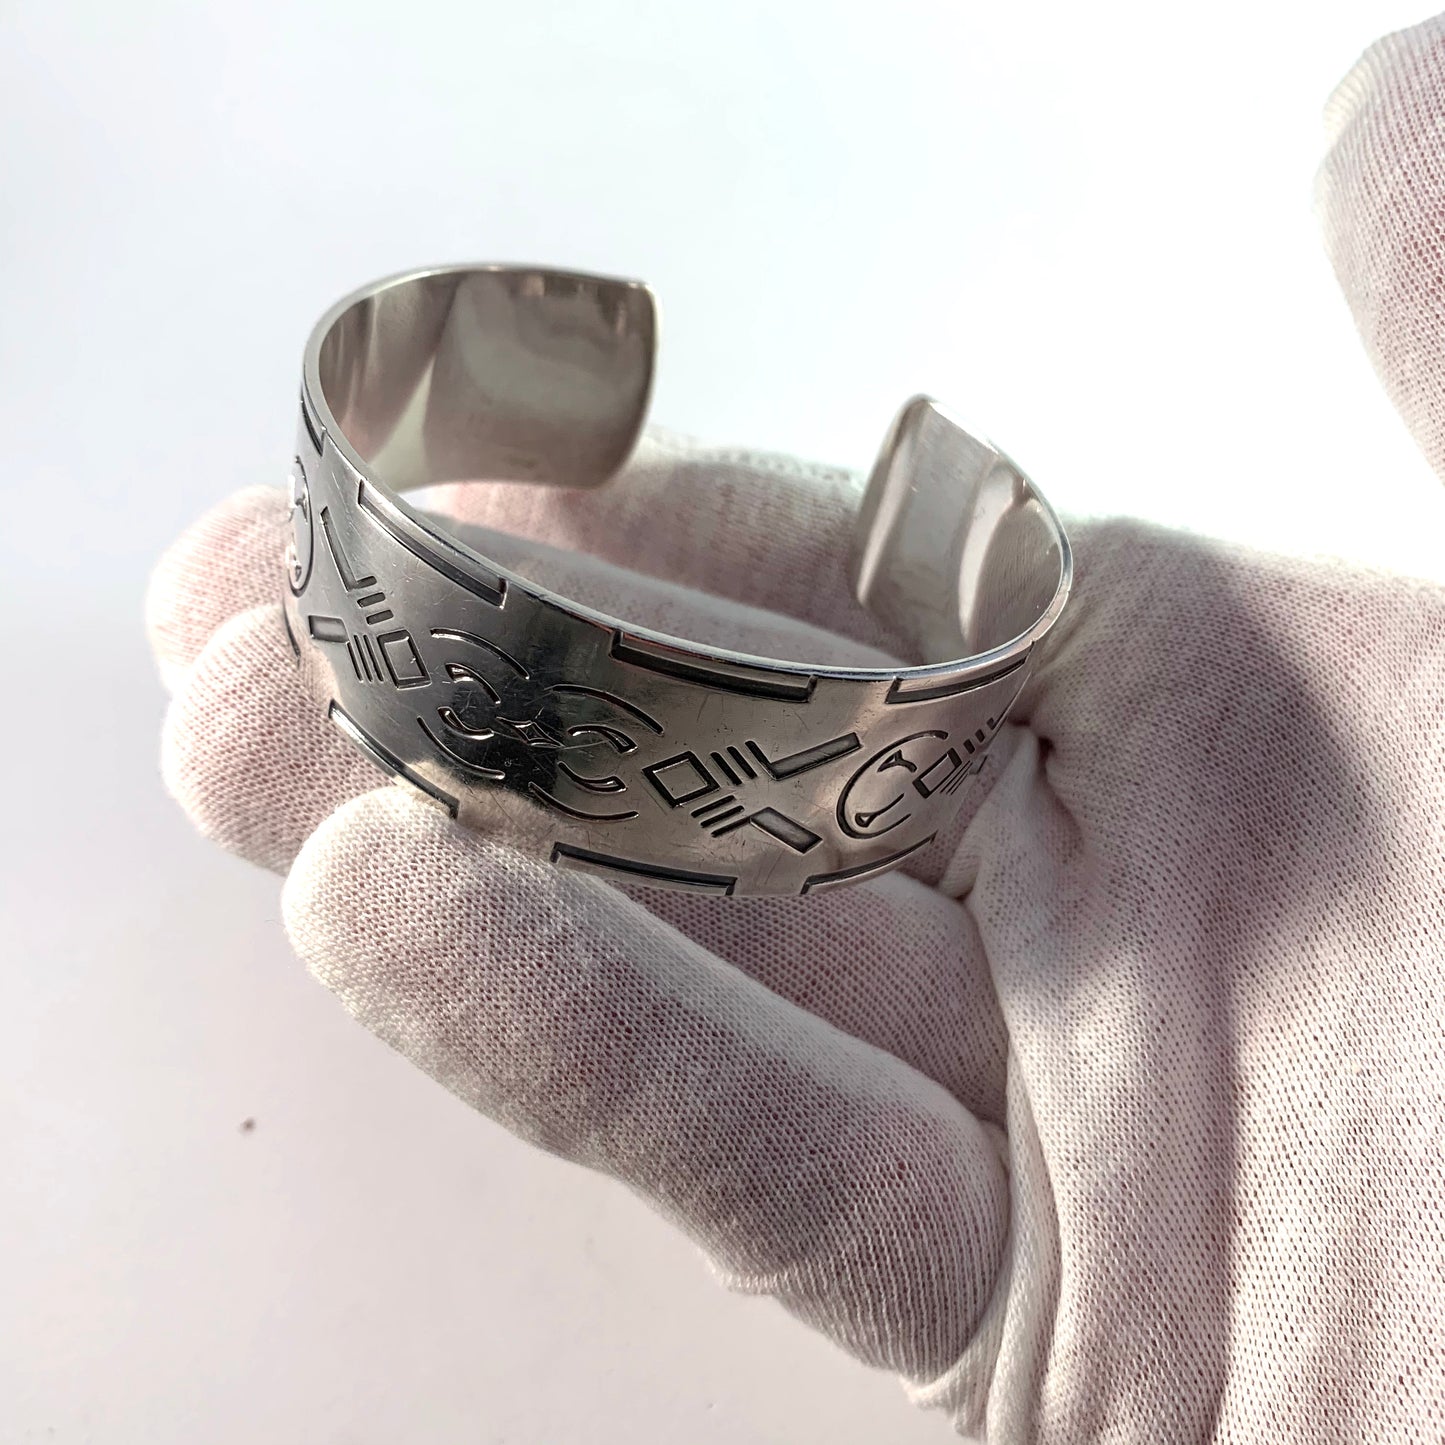 Harald Nielsen for Georg Jensen 1945-51 Sterling Silver Cuff Bangle Bracelet. Design no 64.